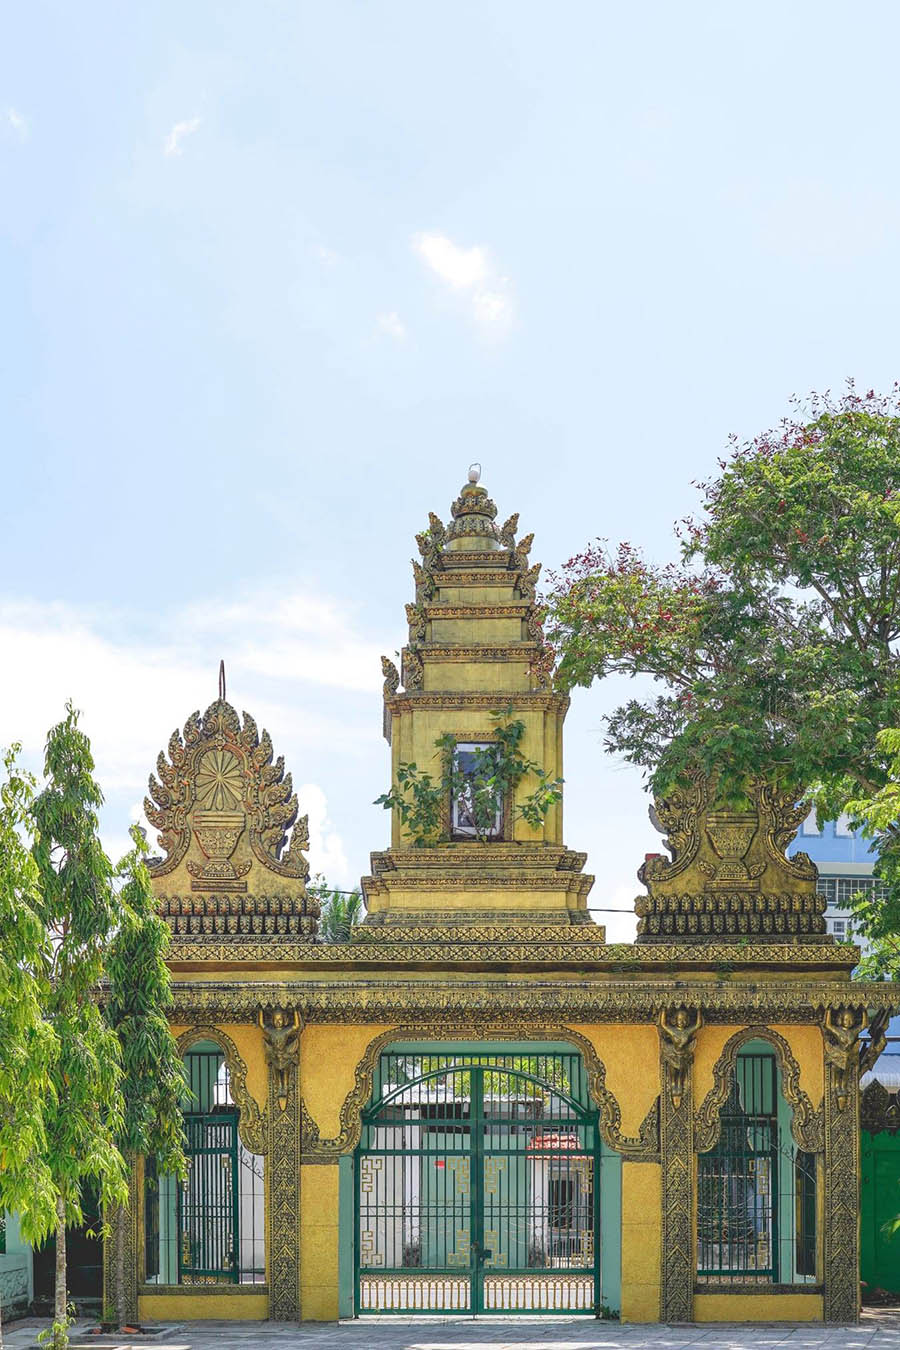 Hành trình review chùa Monivongsa Bopharam với không gian đẹp như tranh vẽ 3